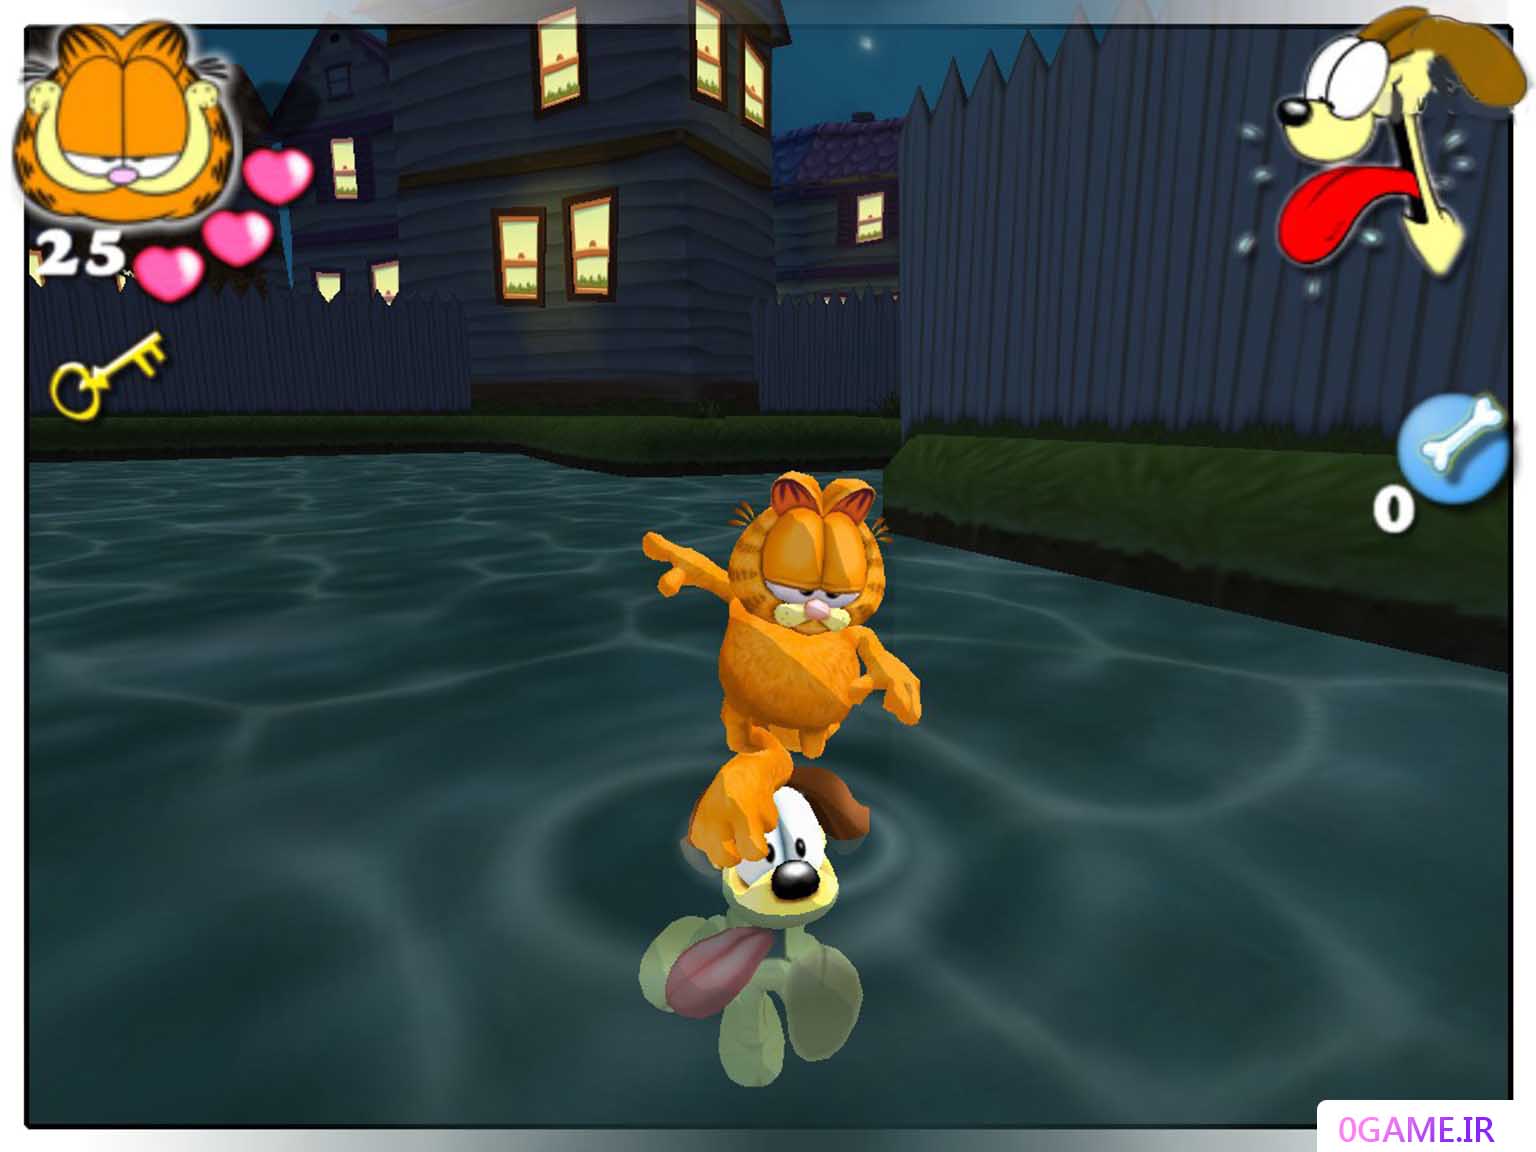 دانلود بازی گارفیلد  (Garfield Saving Arlene) نسخه کامل برای کامپیوتر